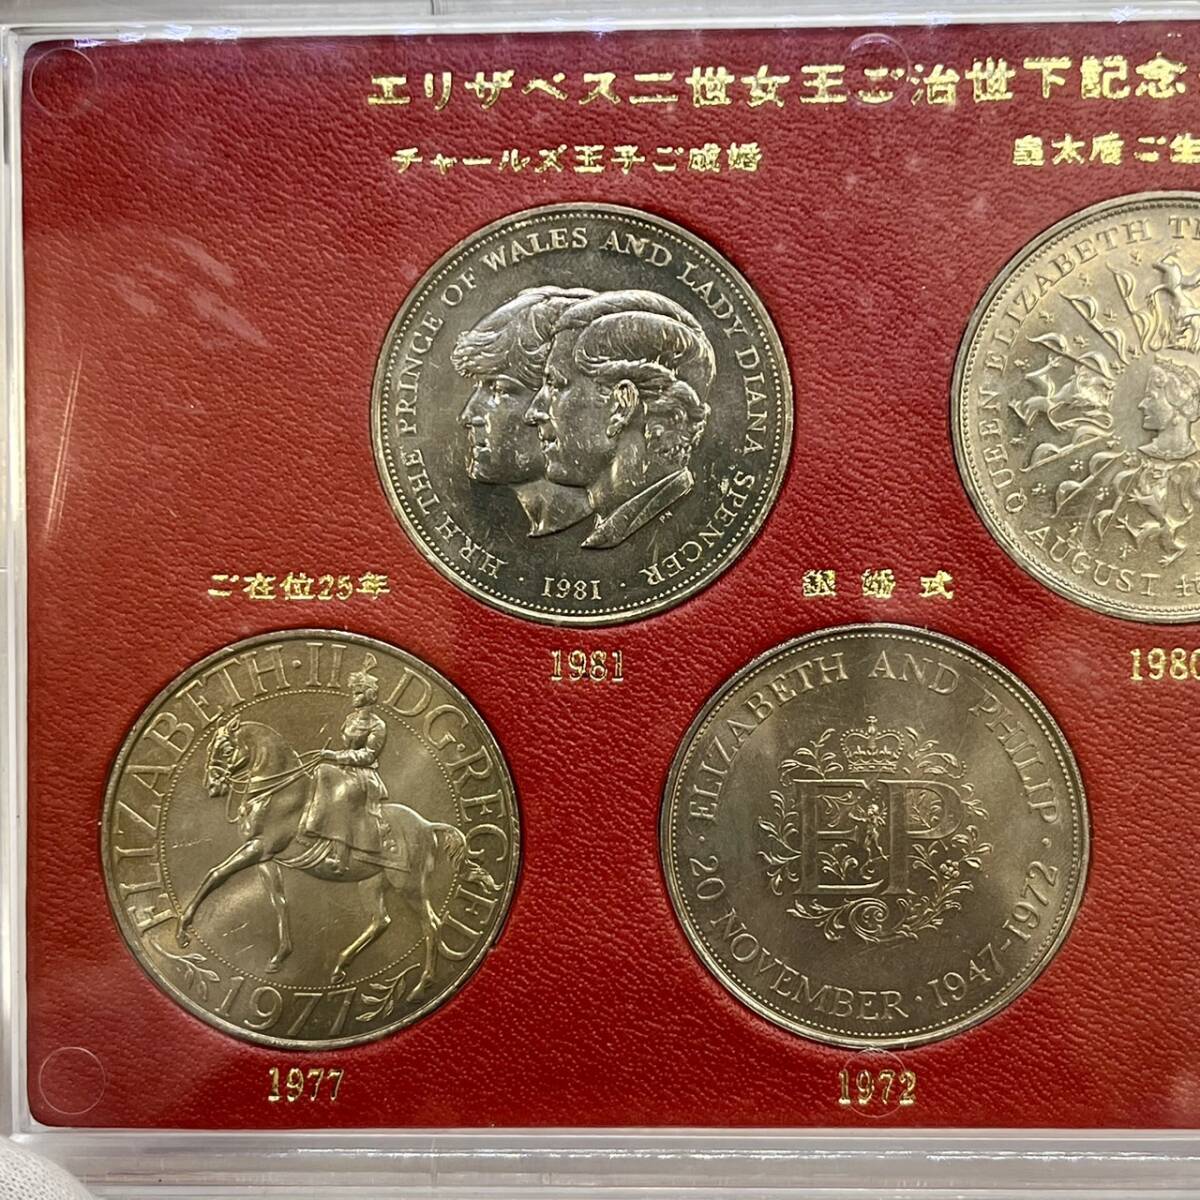 【DHS3017AT】エリザベス2世女王ご治世下記念クラウン ケース入り記念硬貨5枚セット 当時物 コレクションの画像3